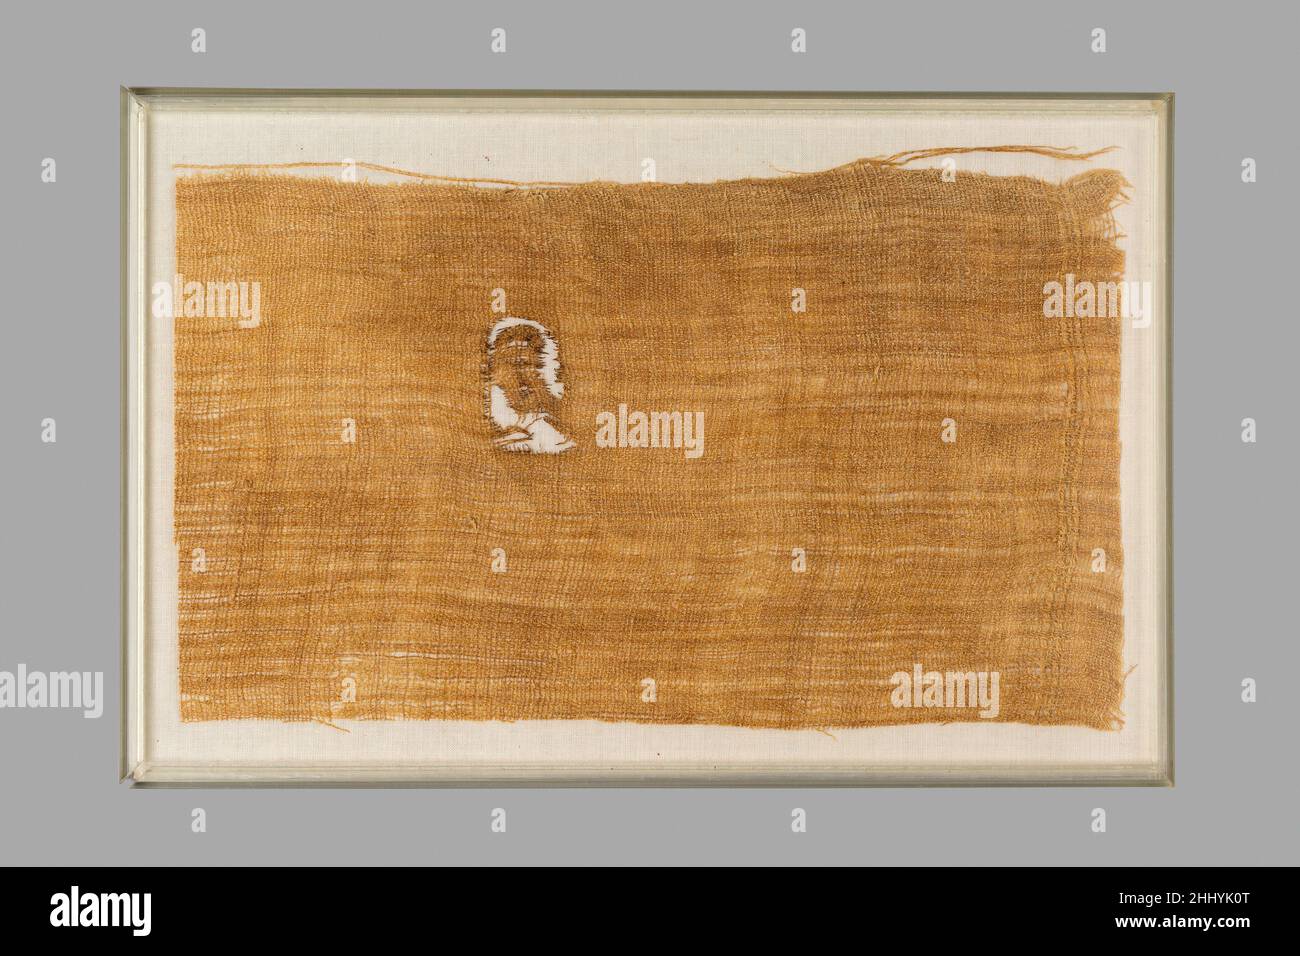 Angolo di un foglio inscritto con la Cartouche di Neferure ca. 1492–1473 a.C. nuovo regno questo frammento di lino è inscritto in inchiostro con il cartuche della figlia di Hatshepsut, Neferure. Proveniva da un bendaggio usato per avvolgere la mummia di Ramose, il padre di Senenmut (36,3.252) e marito di Hatnefer (36,3.1). Il bendaggio era stato strappato da un foglio di lino grossolano ed era largo 7 1/2 pollici (19 cm) e lungo quasi 15 piedi (455 cm). Il foglio originale proveniva probabilmente da un magazzino di merci messe da parte per l'uso della principessa. Un intero foglio utilizzato nelle confezioni mummie di Ramose era anche insc Foto Stock